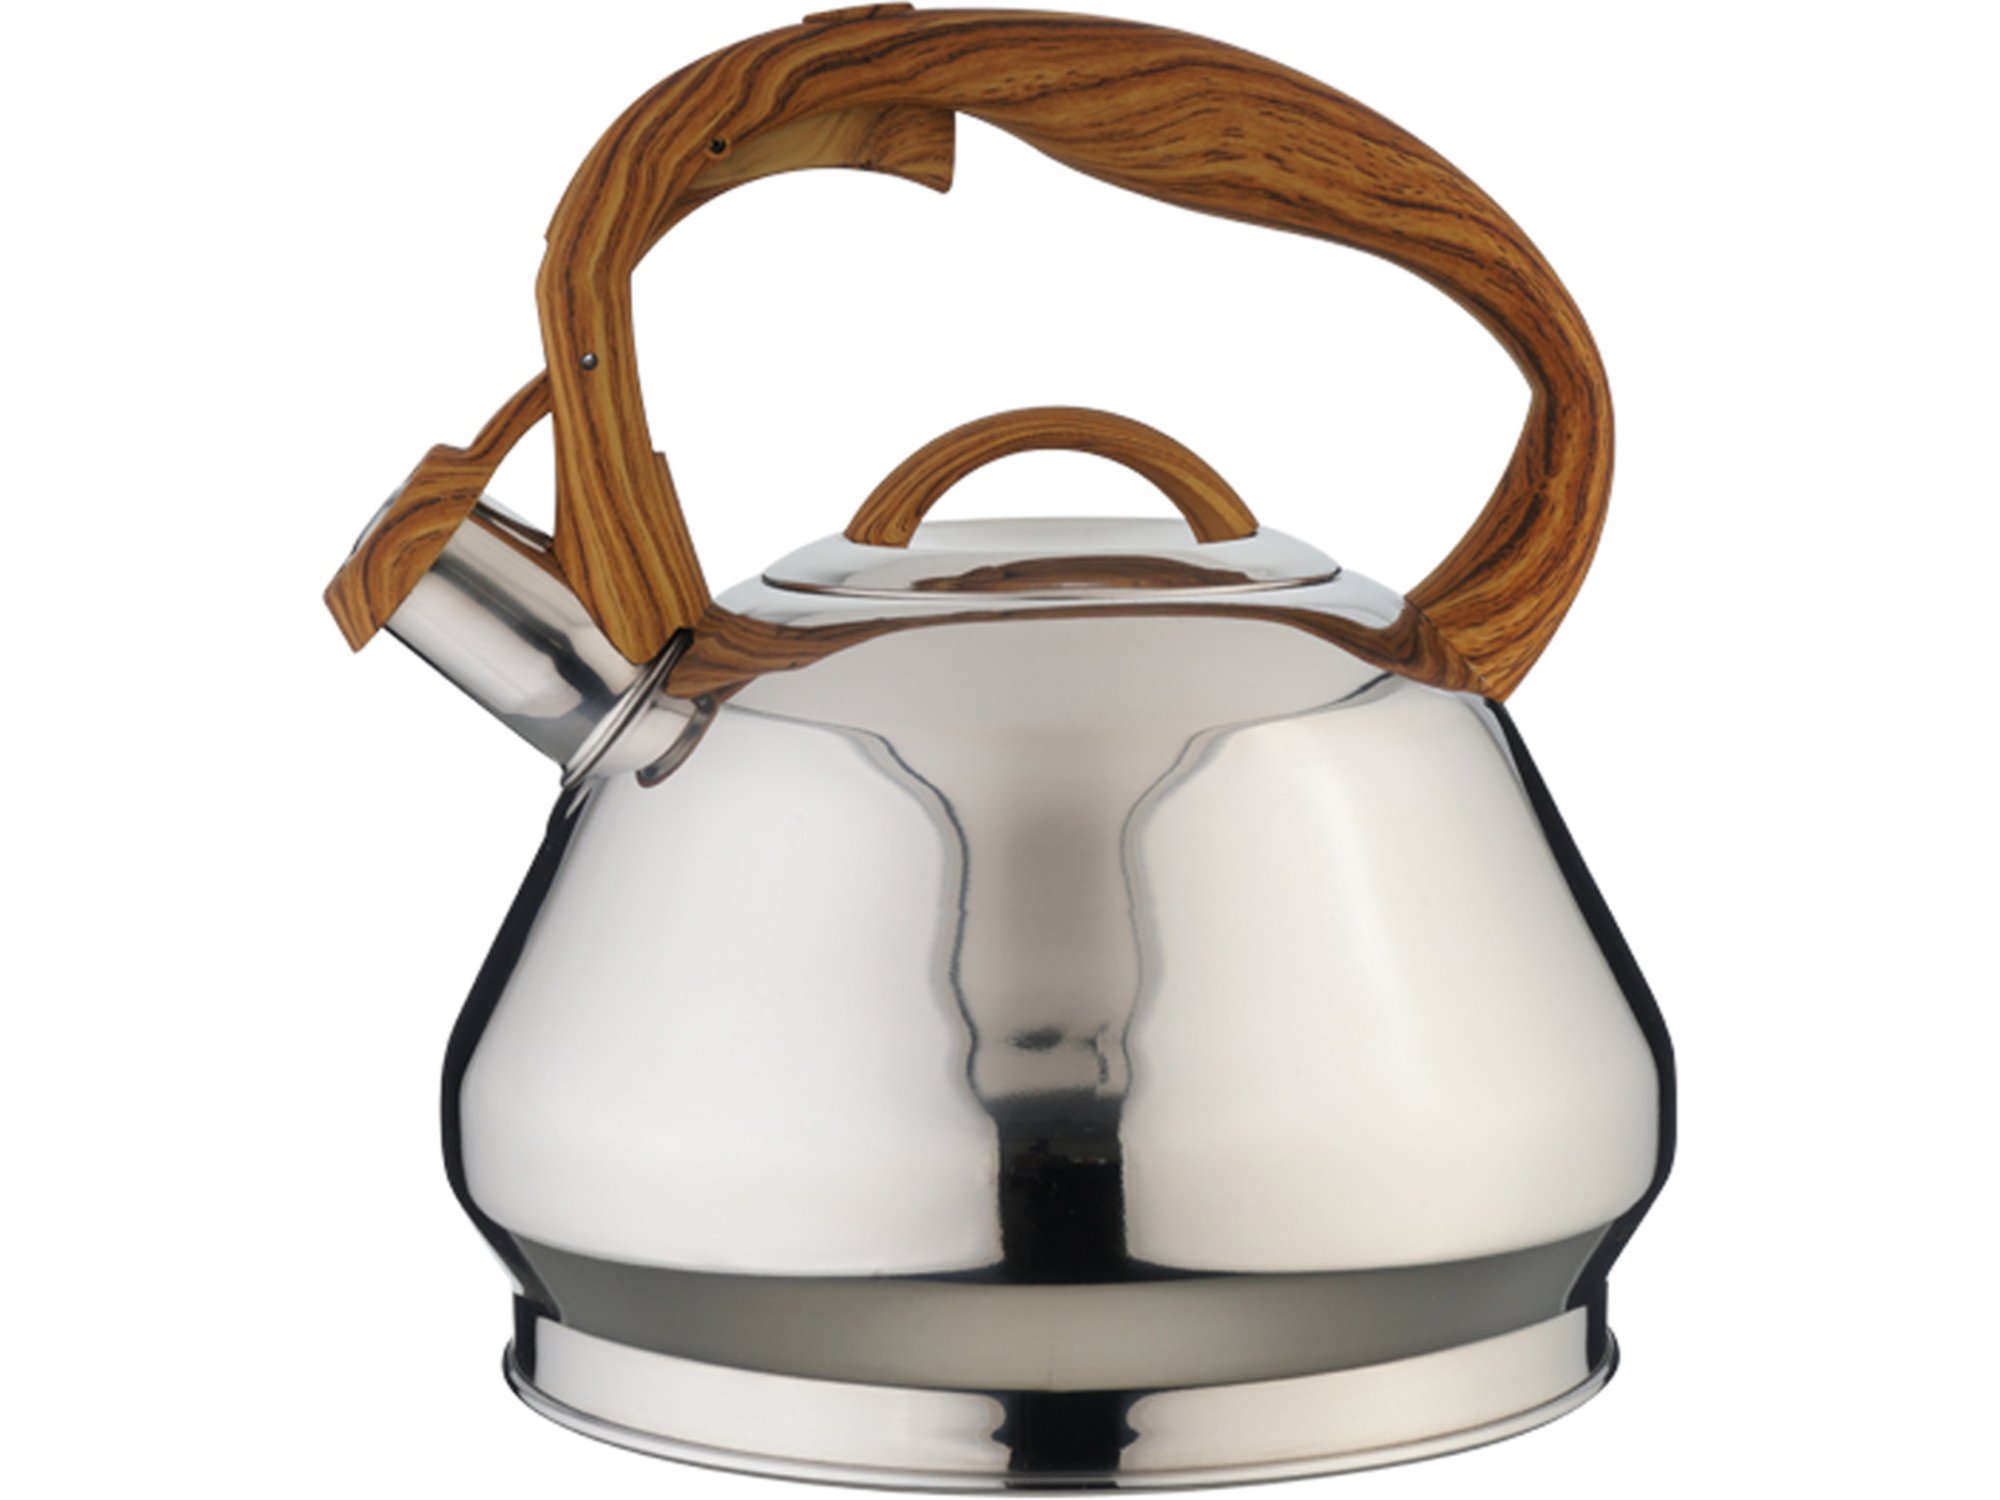 EVA čajnik z ročajem v imitaciji lesa 3,4l, indukcija, inox, pvc